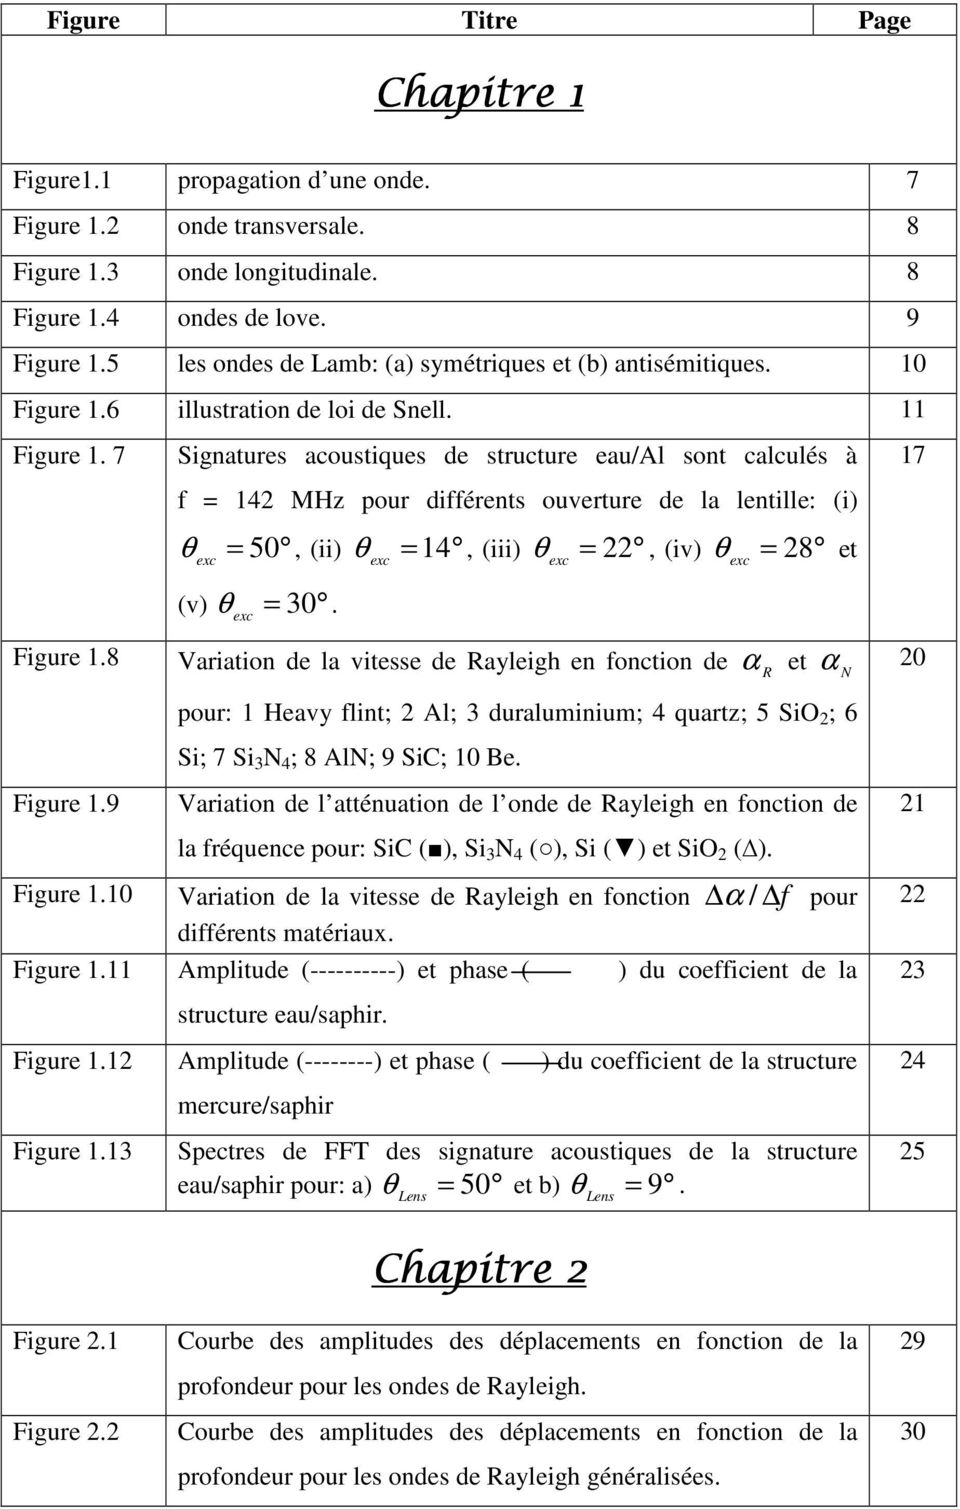 7 Signatures acoustiques de structure eau/al sont calculés à f = 142 MHz pour différents ouverture de la lentille: (i) θ = 50, (ii) θ =14, (iii) θ = 22, (iv) θ = 28 et exc (v) θ = 30.